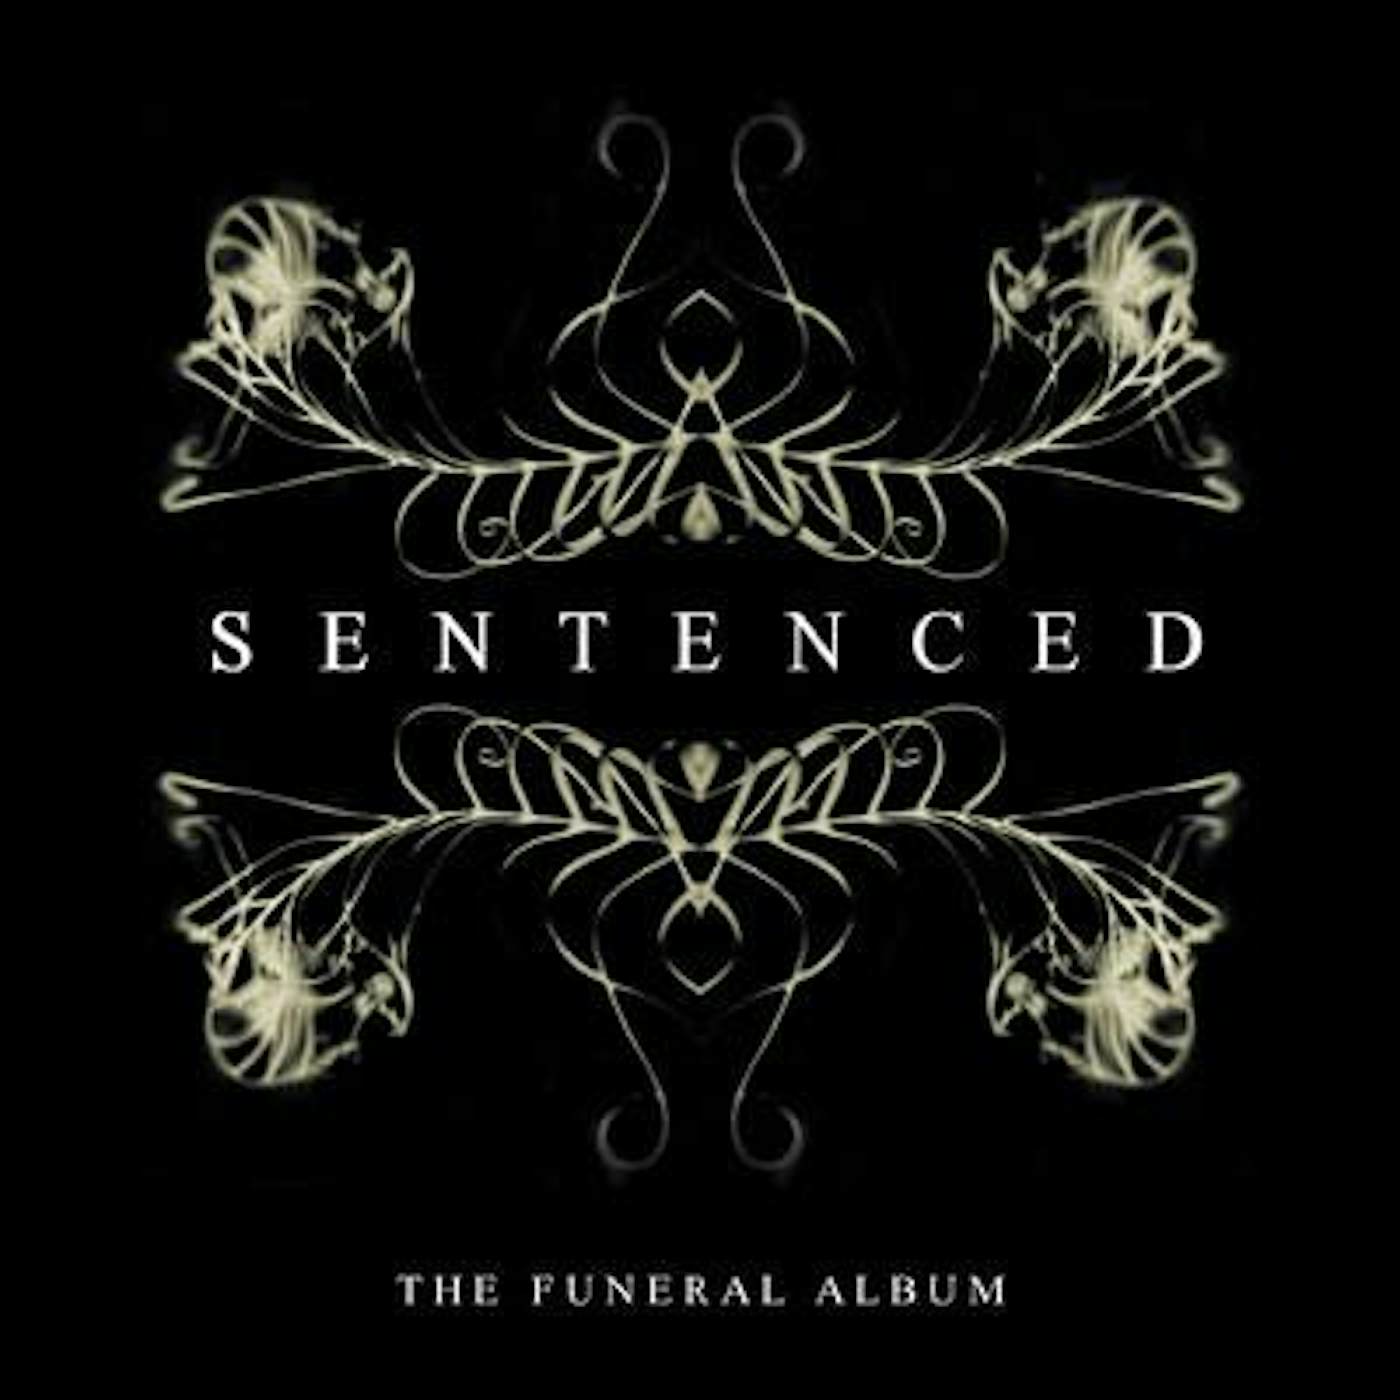 Sentenced FUNERAL ALBUM     (GER) Vinyl Record - Colored Vinyl, Gatefold Sleeve, Gold Vinyl, Reissue